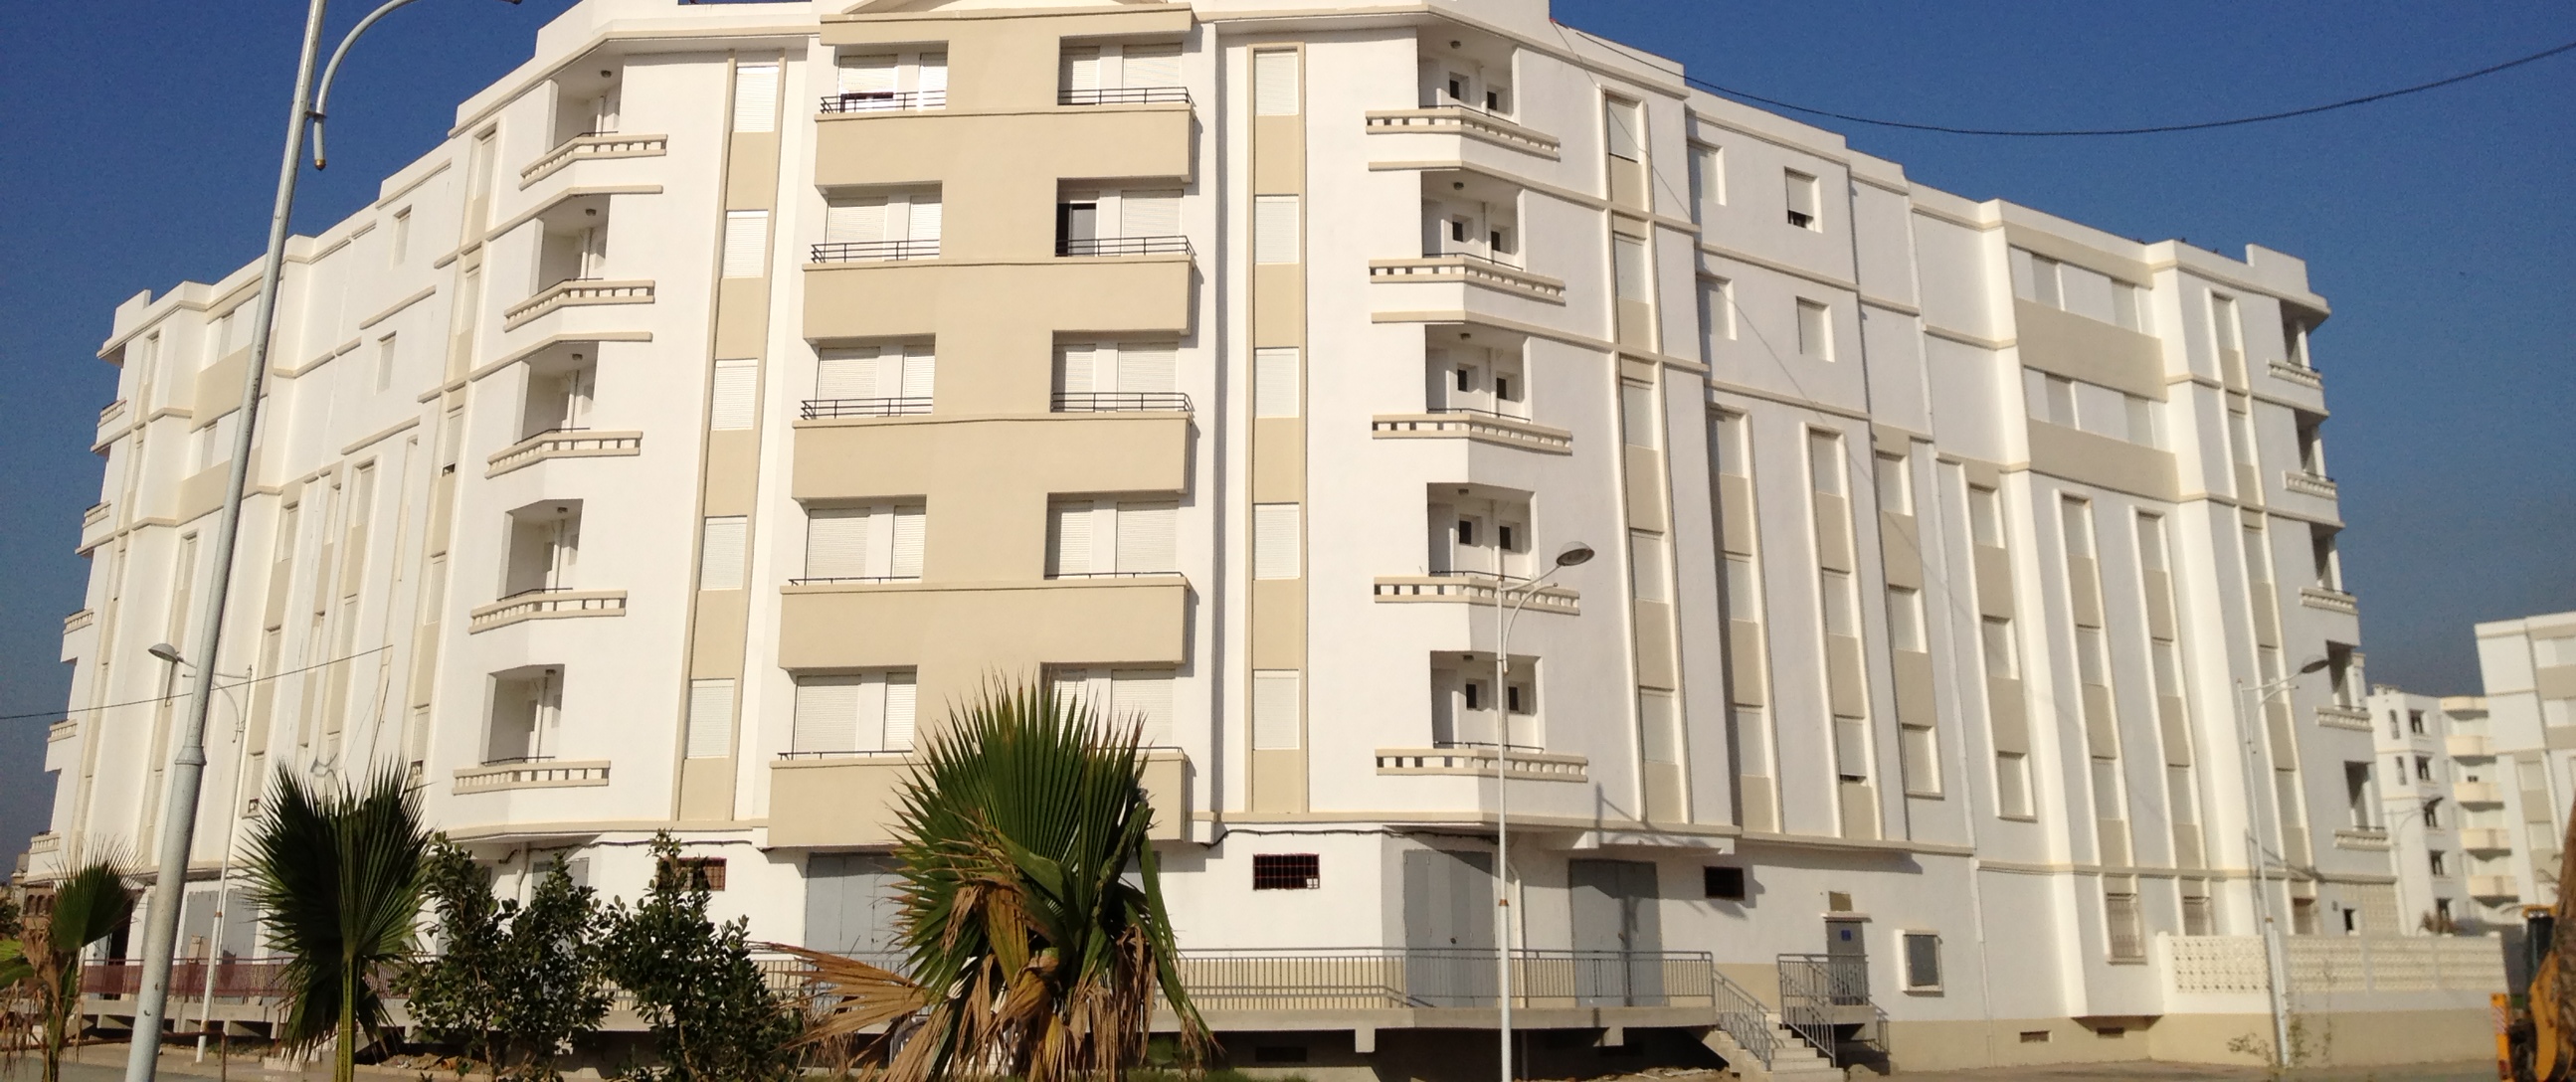 阿尔及利亚740住房项目